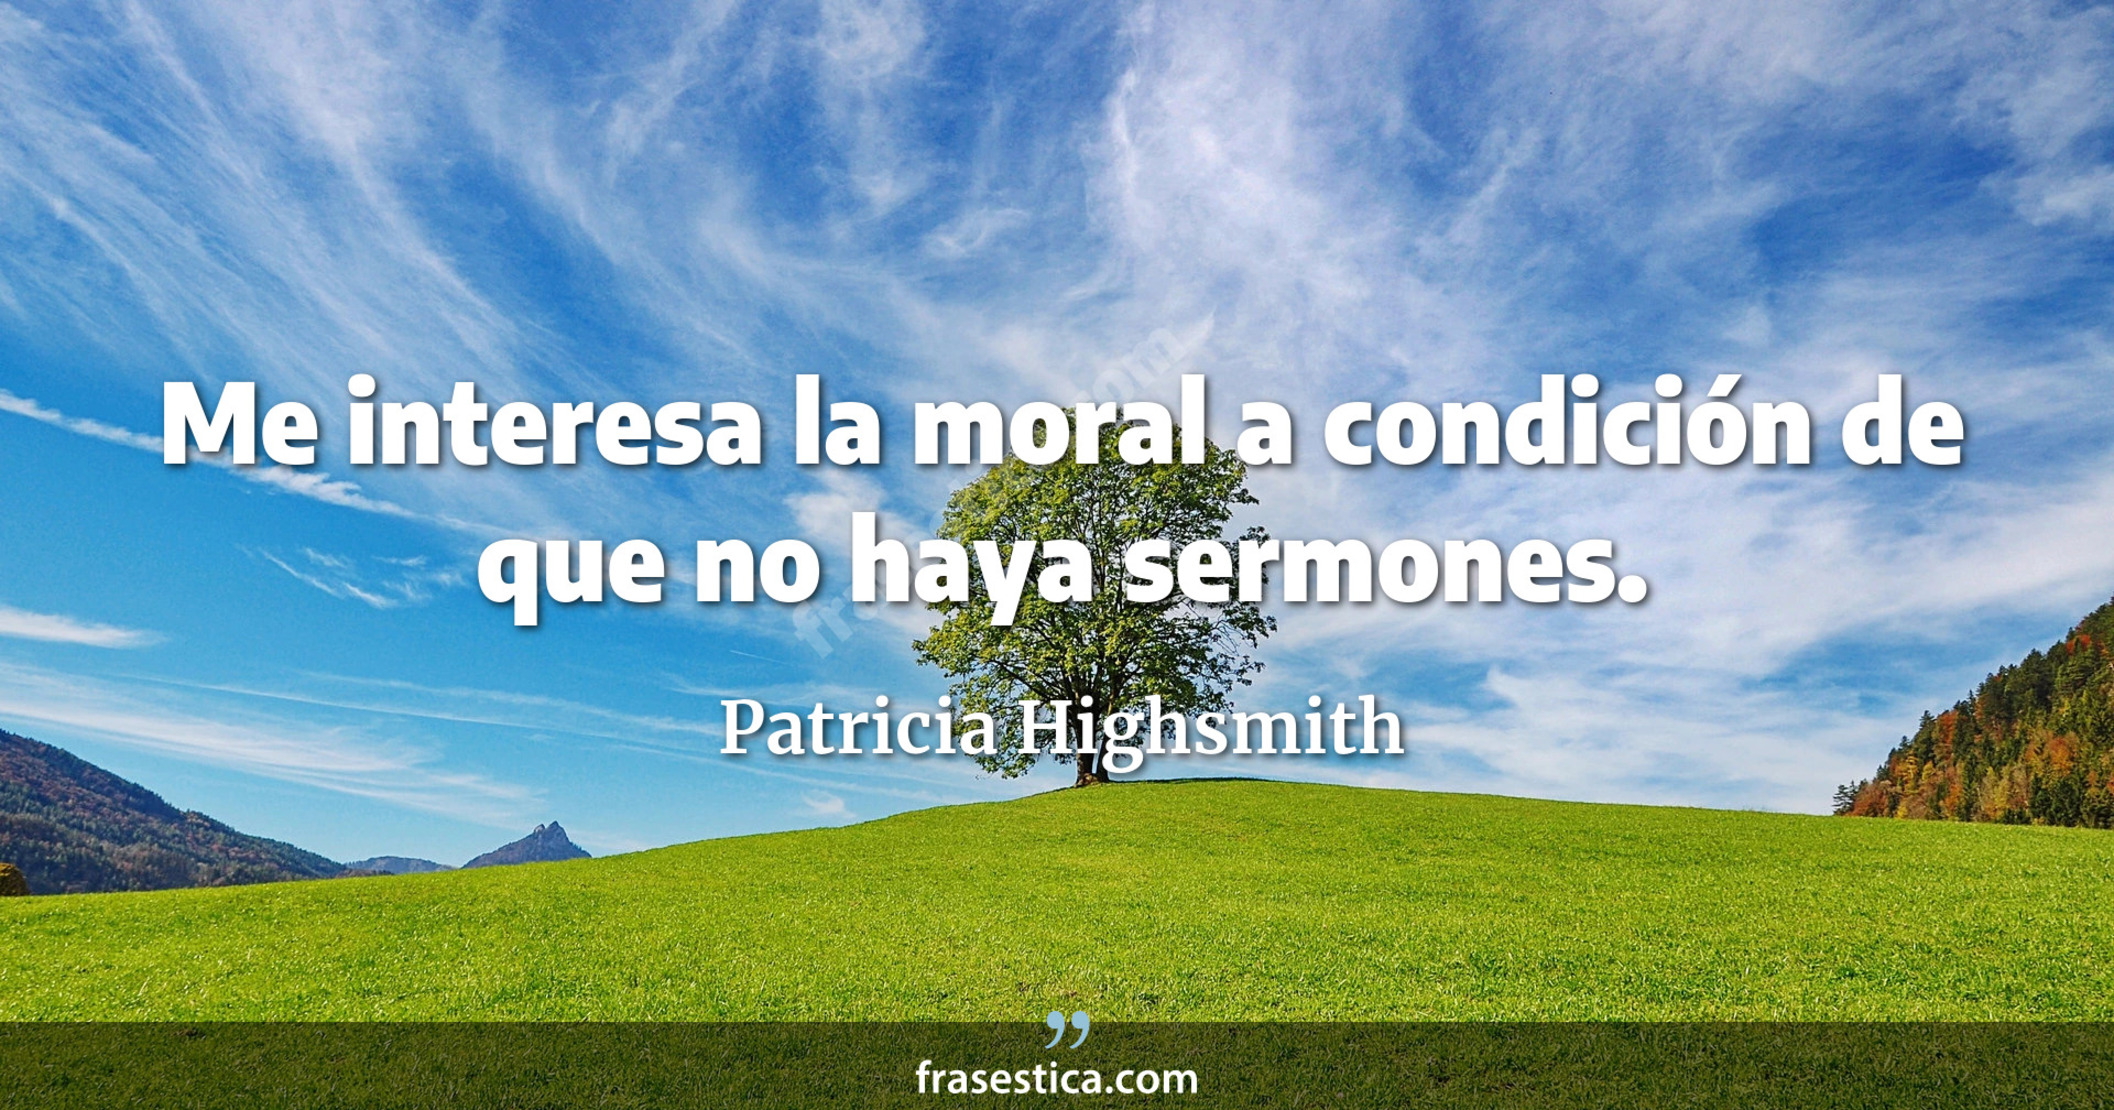 Me interesa la moral a condición de que no haya sermones. - Patricia Highsmith